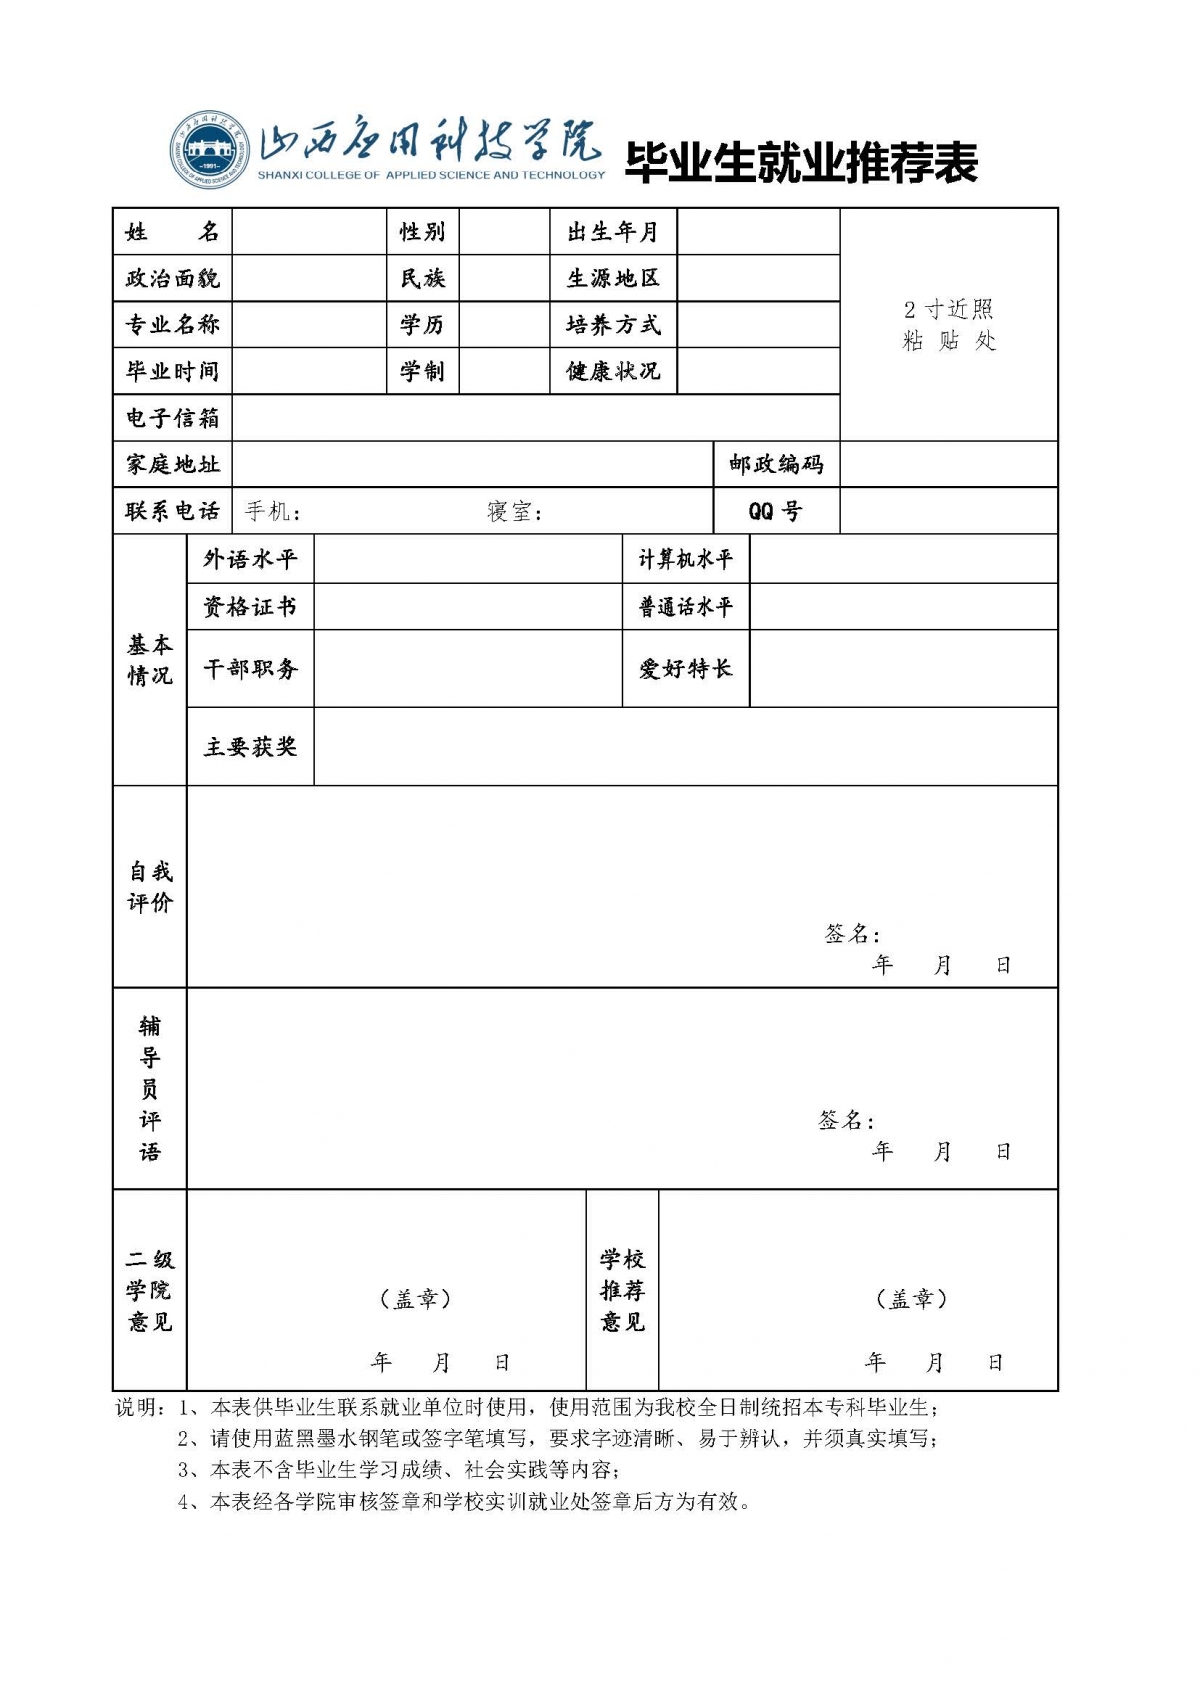 高等学校毕业登记表excel格式下载-华军软件园